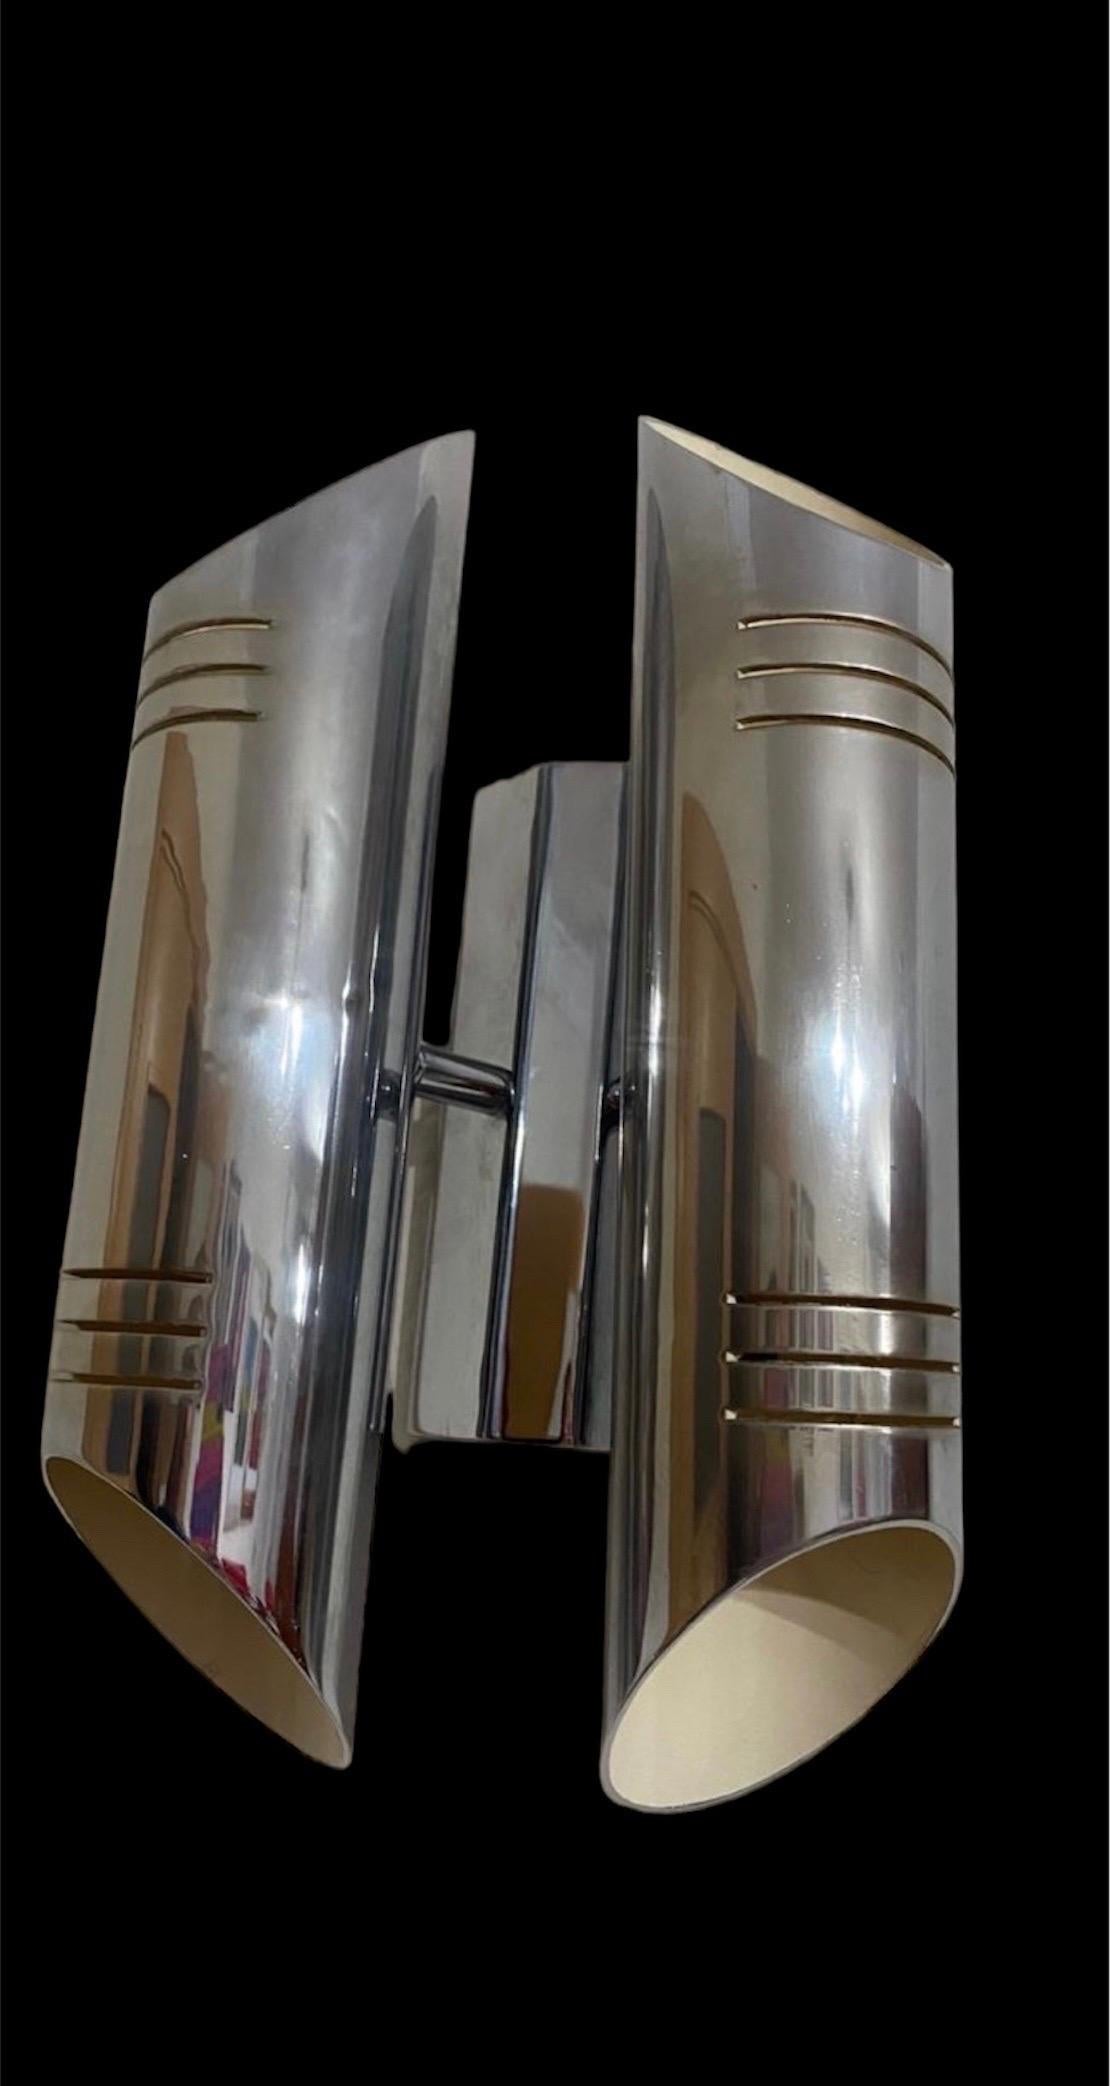 Superbe paire d'appliques tubulaires produites à l'époque du Space Age  dans les années 70.

Structure en métal chromé.

Objet unique qui illuminera à merveille et apportera une véritable touche design à votre intérieur.

Électricité vérifiée,